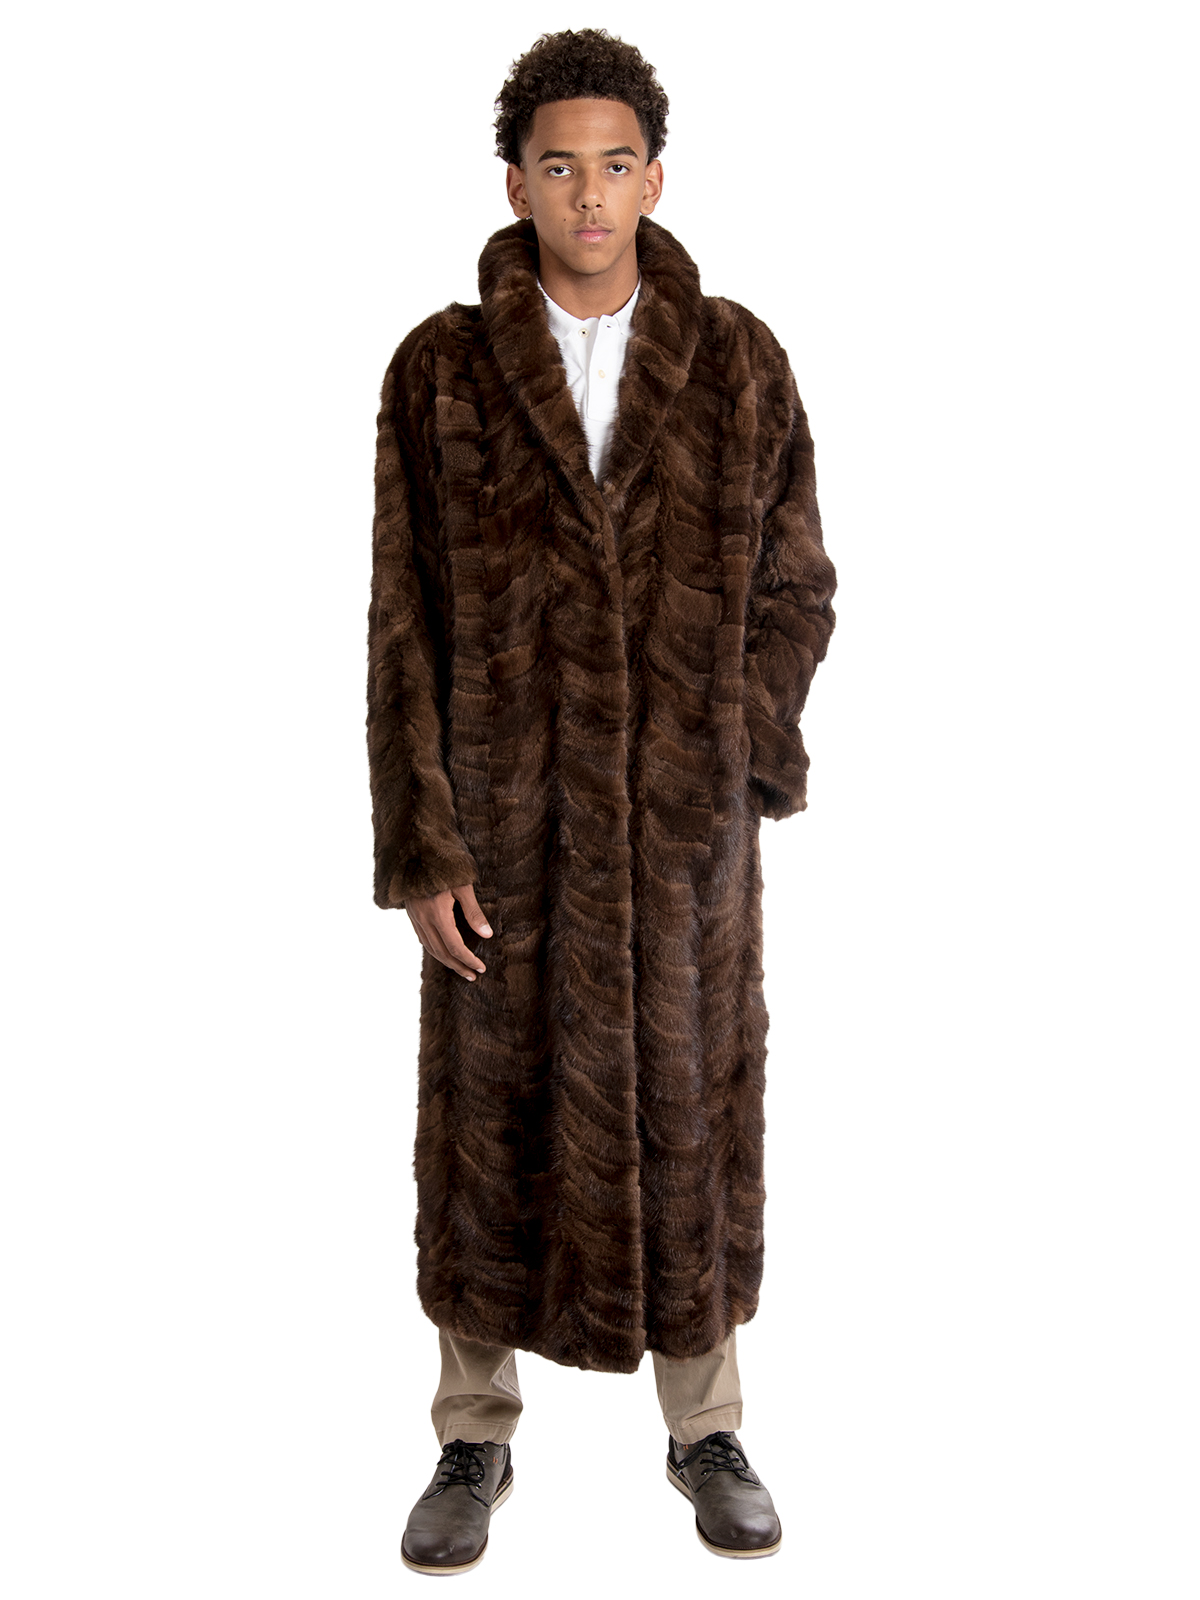 Sculptured Mahogany Mink Fur Coat - Men's Fur Coat - XL | Estate Furs